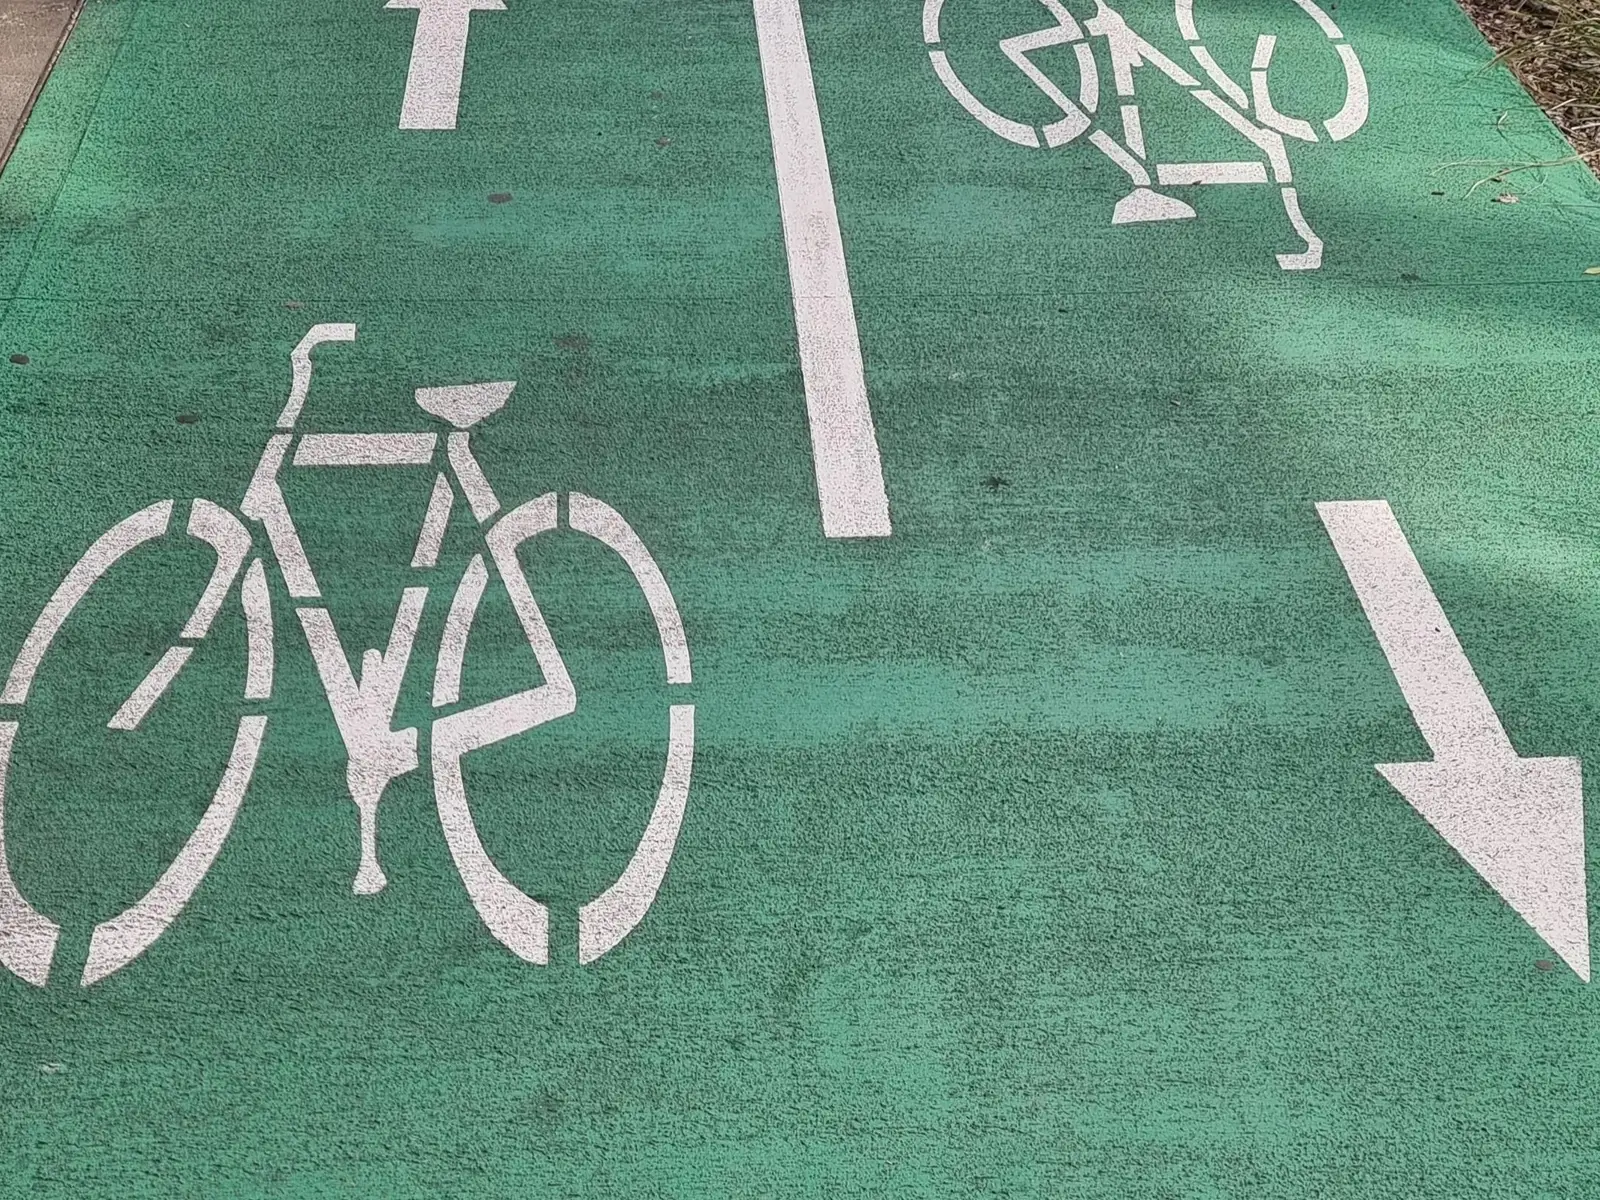 Bike Zone line marking stencil